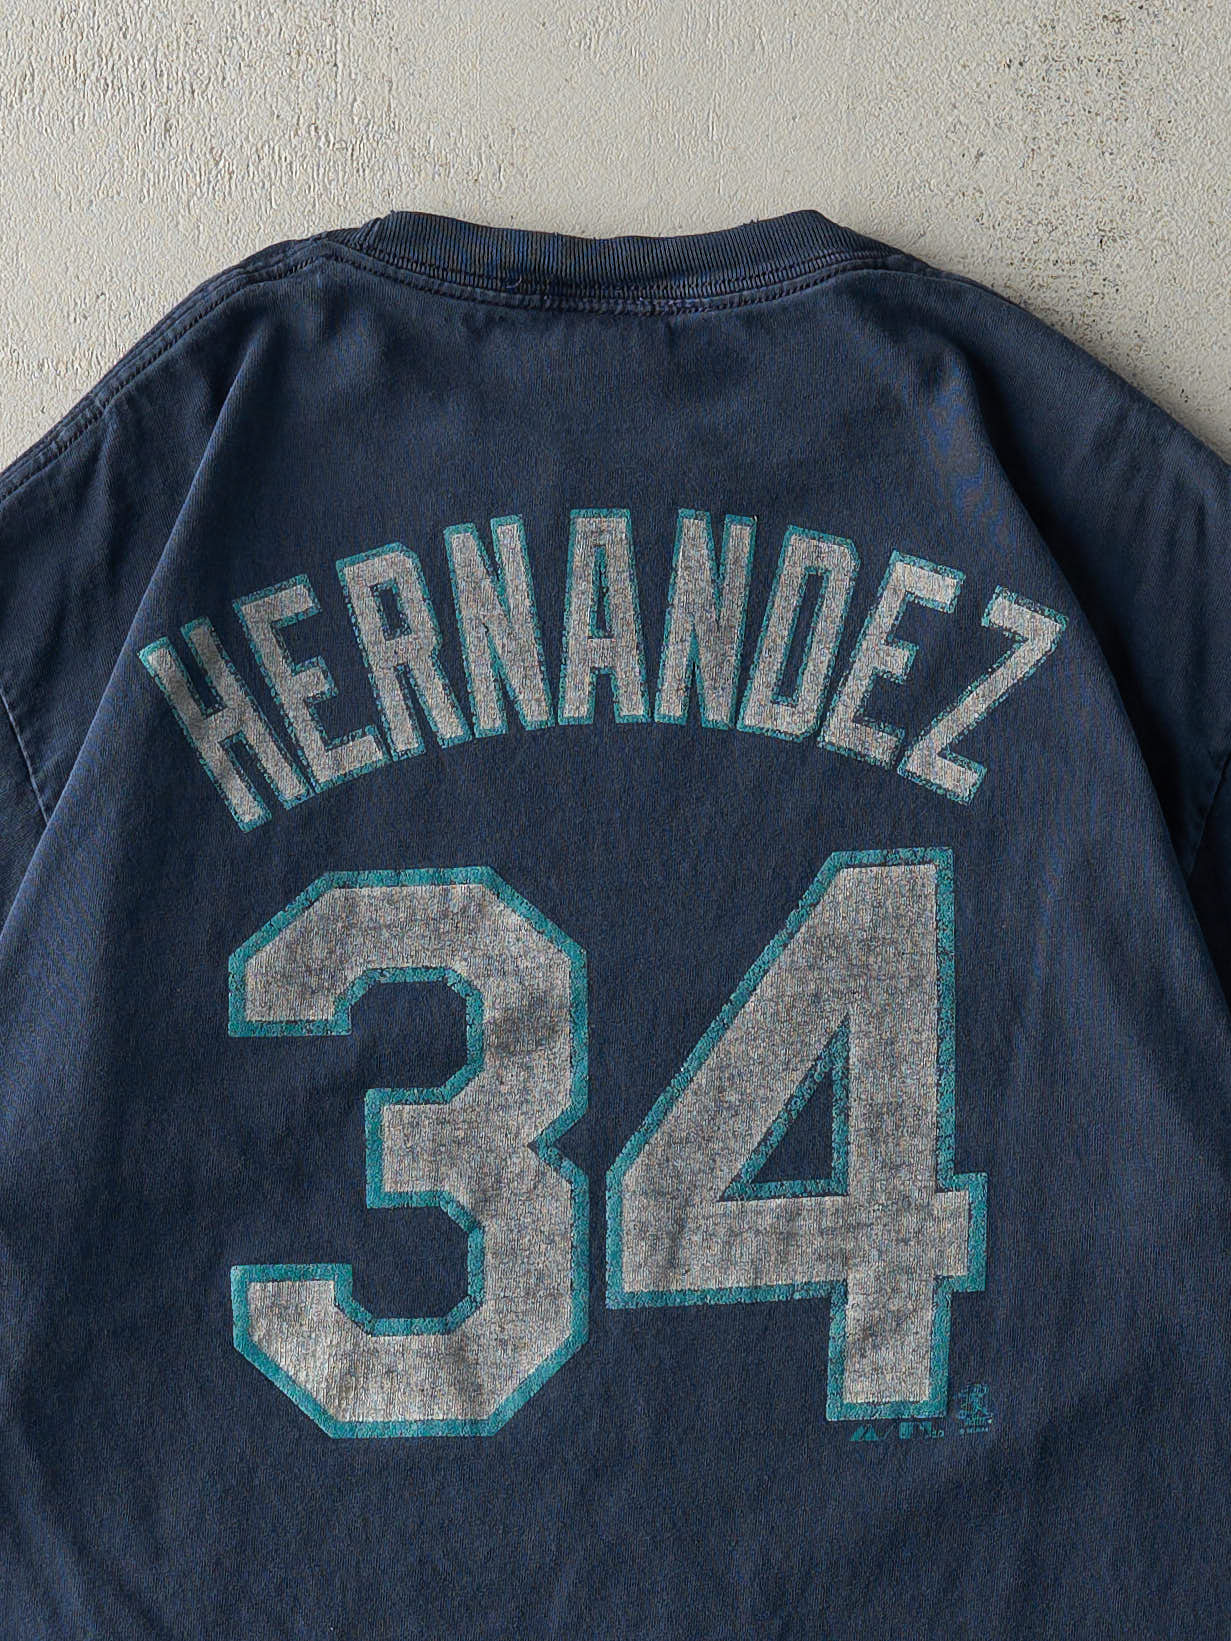 Vintage Y2K Navy Blue Seattle Mariners #34 Hernandez Player Tee (M/L)